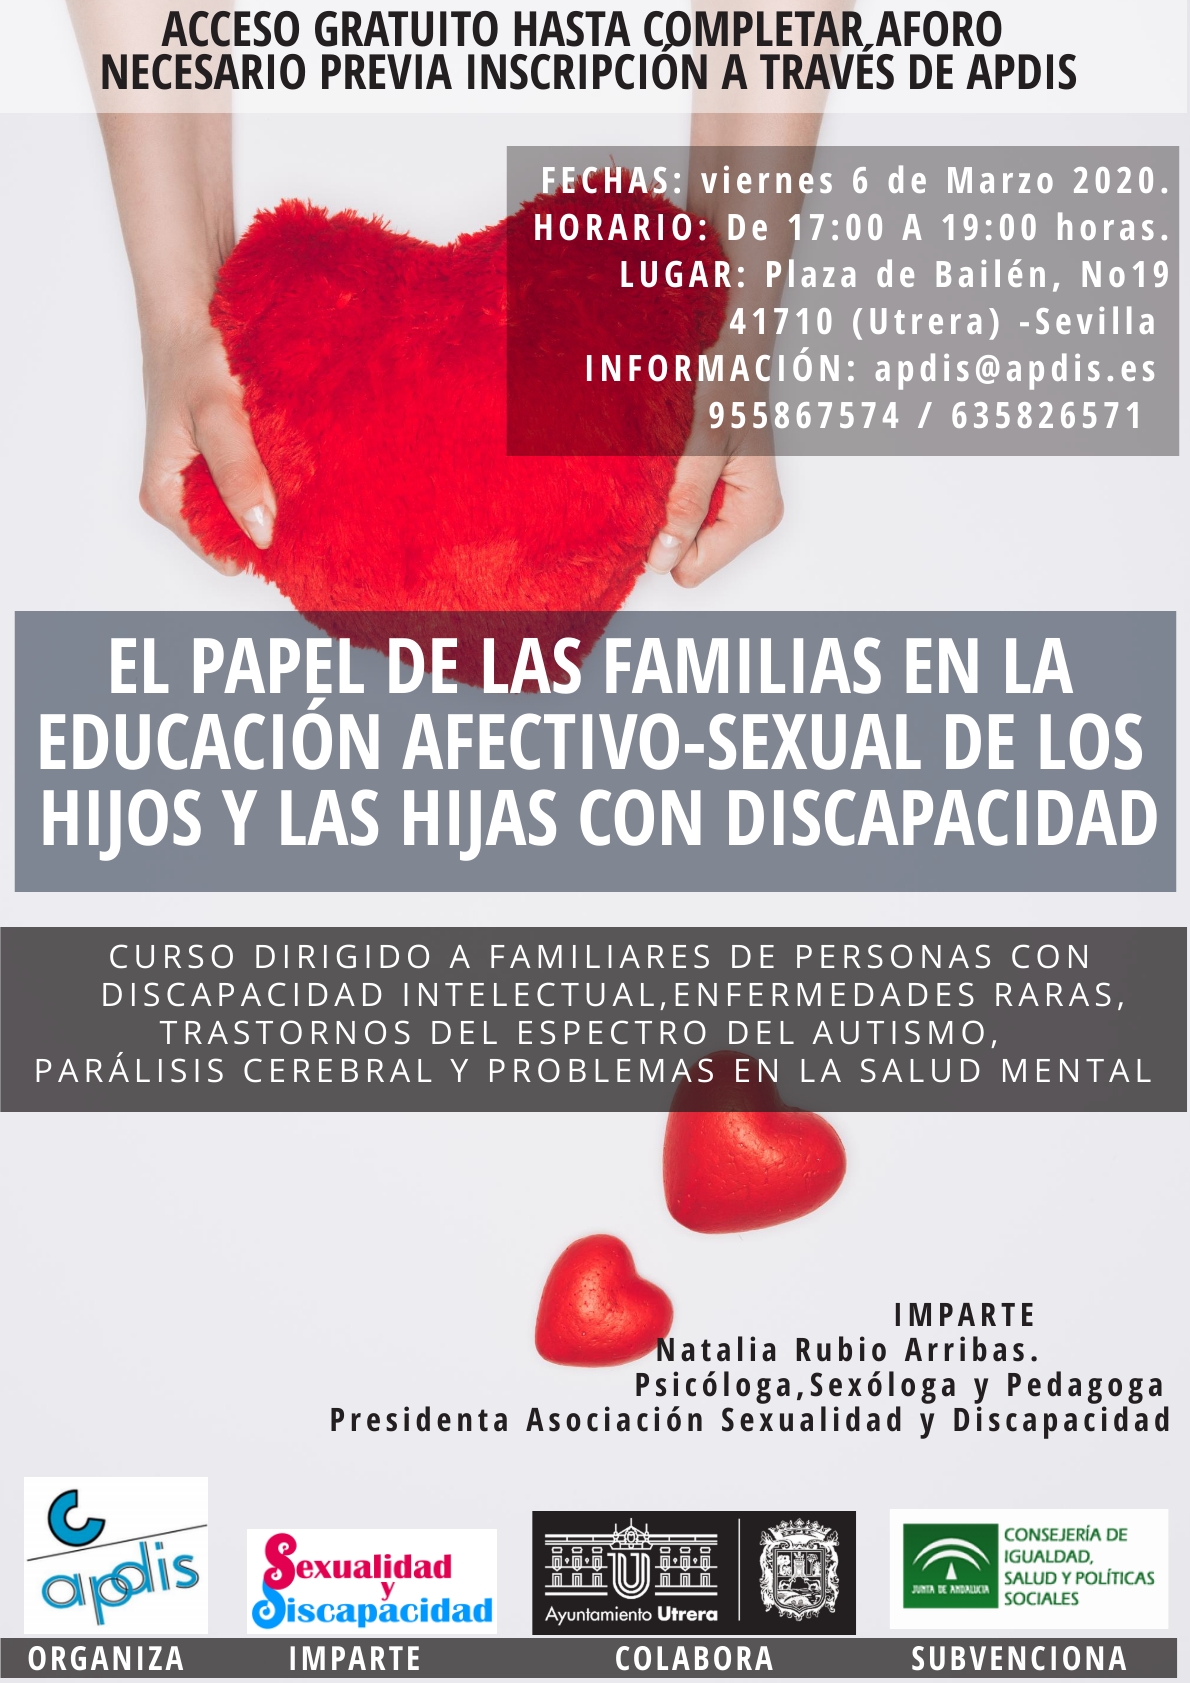 El Papel de las familias en la educación afectivo-sexual de los hijos y las hijas con discapacidad. Claves y Pistas para Familias.